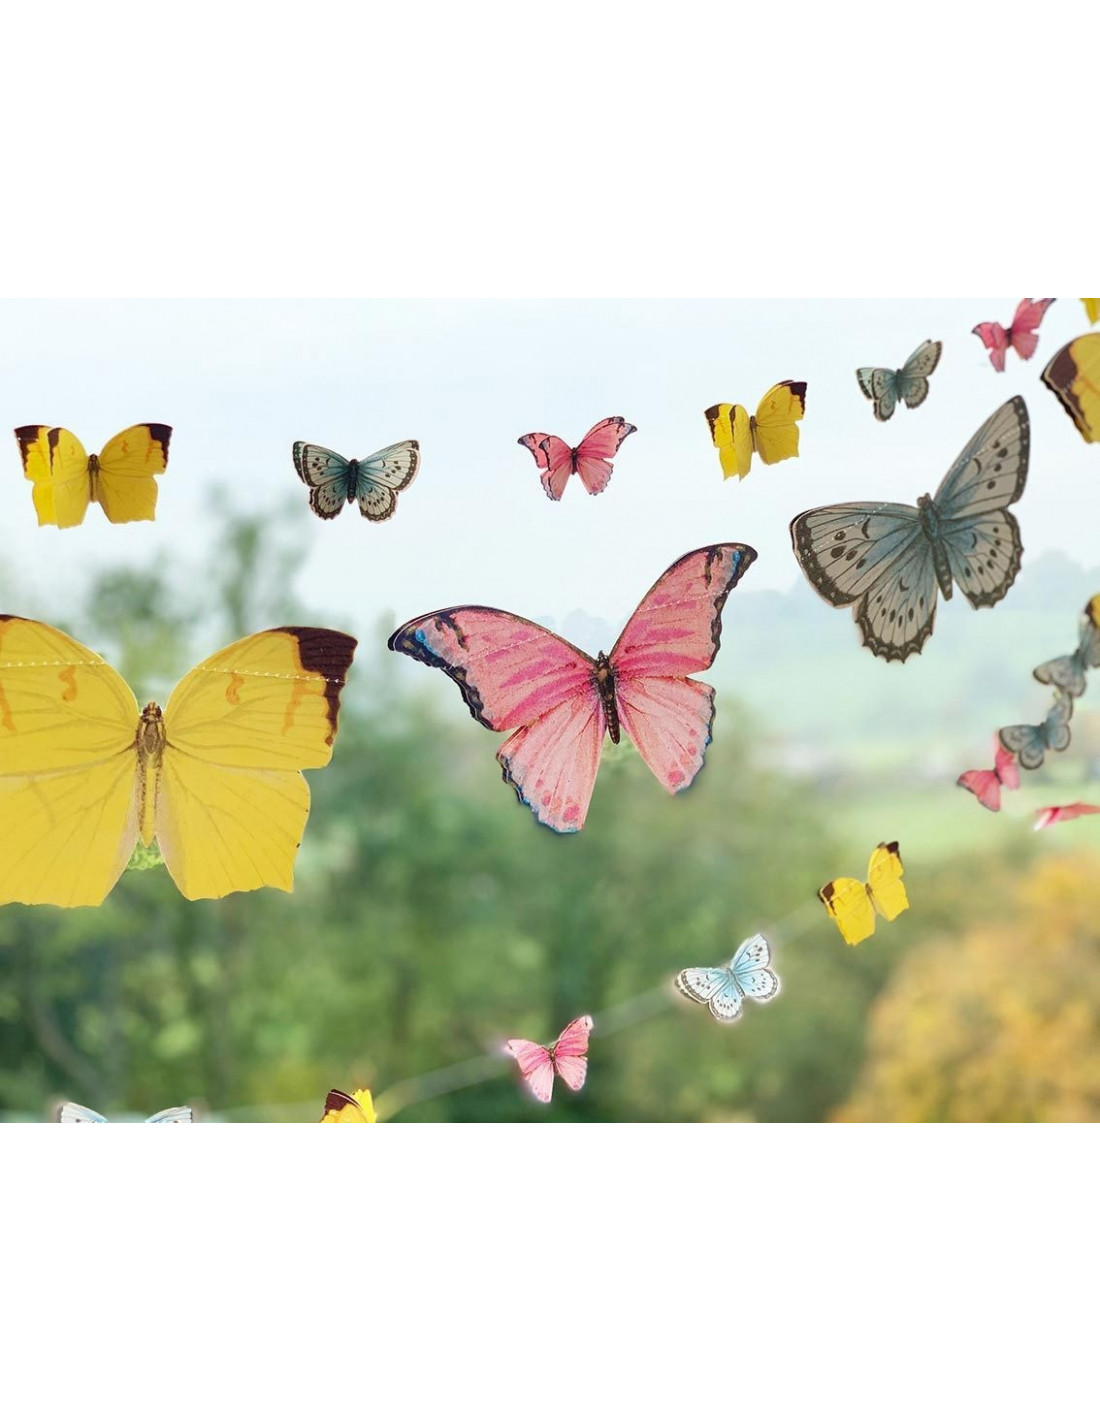 Guirlande Petits Papillons en Papier Thème Fée - Les Bambetises